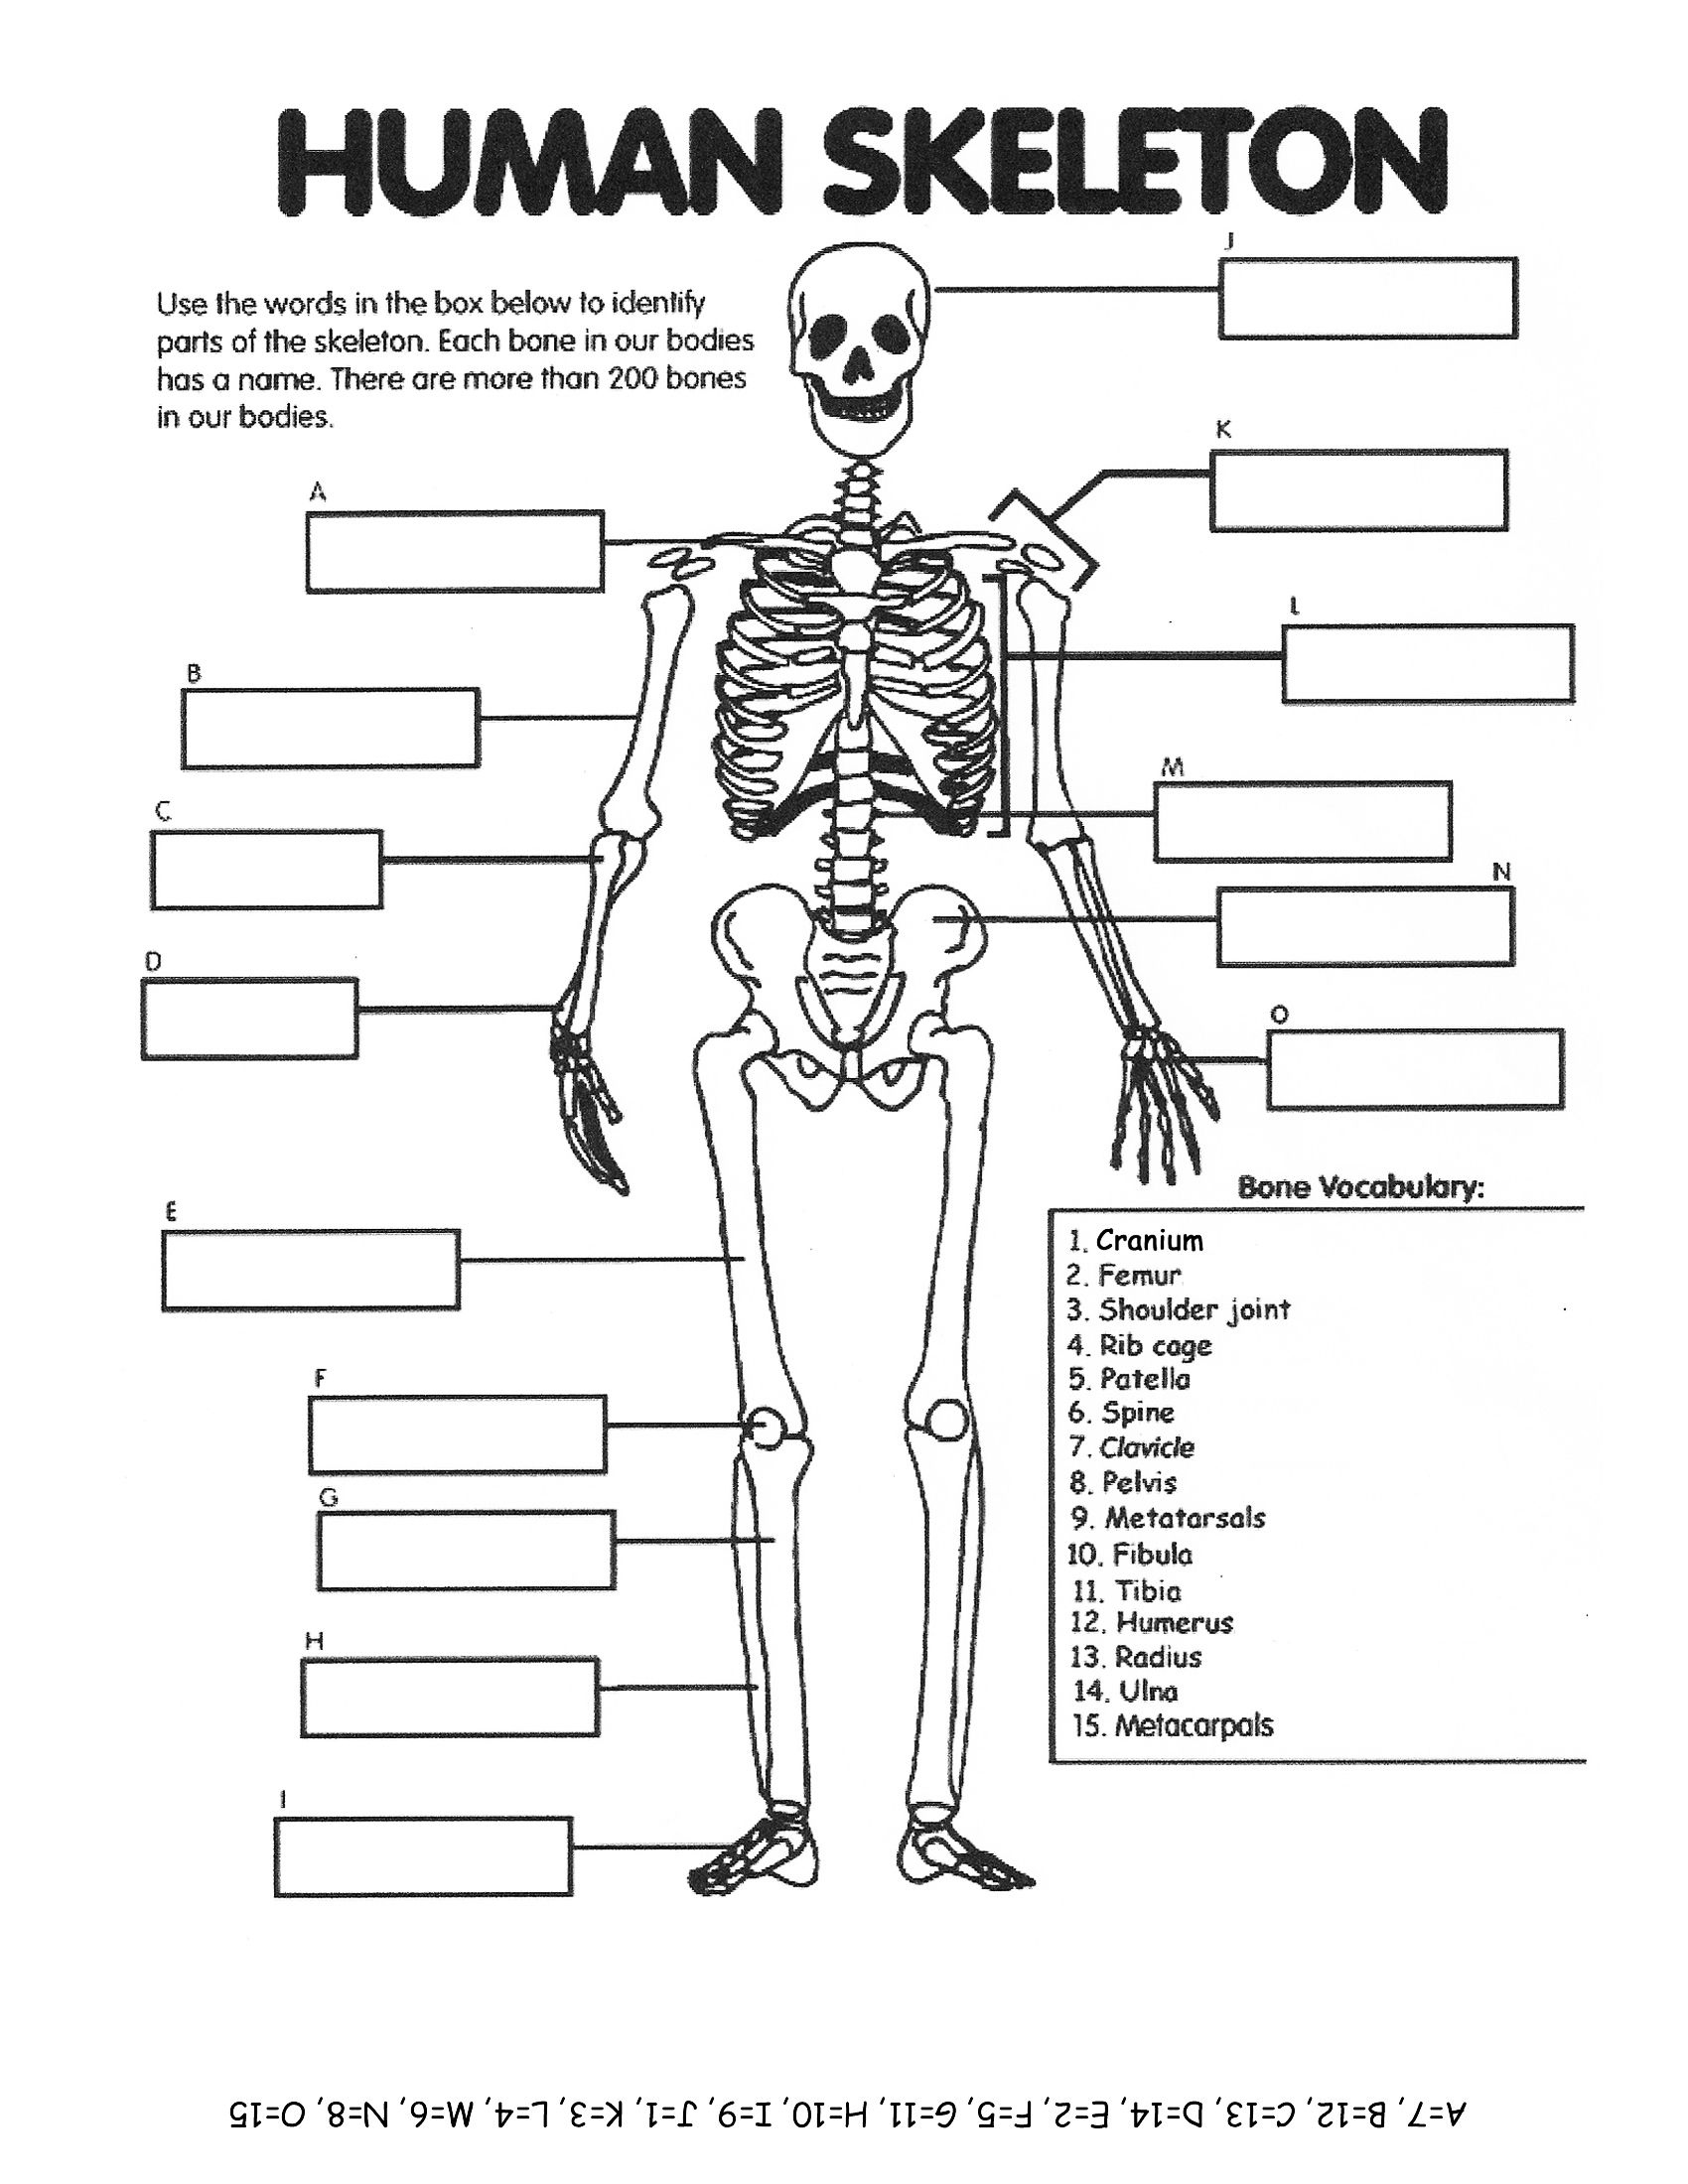 Functions Of The Skeleton Year 3 Worksheet Free Printable Worksheets